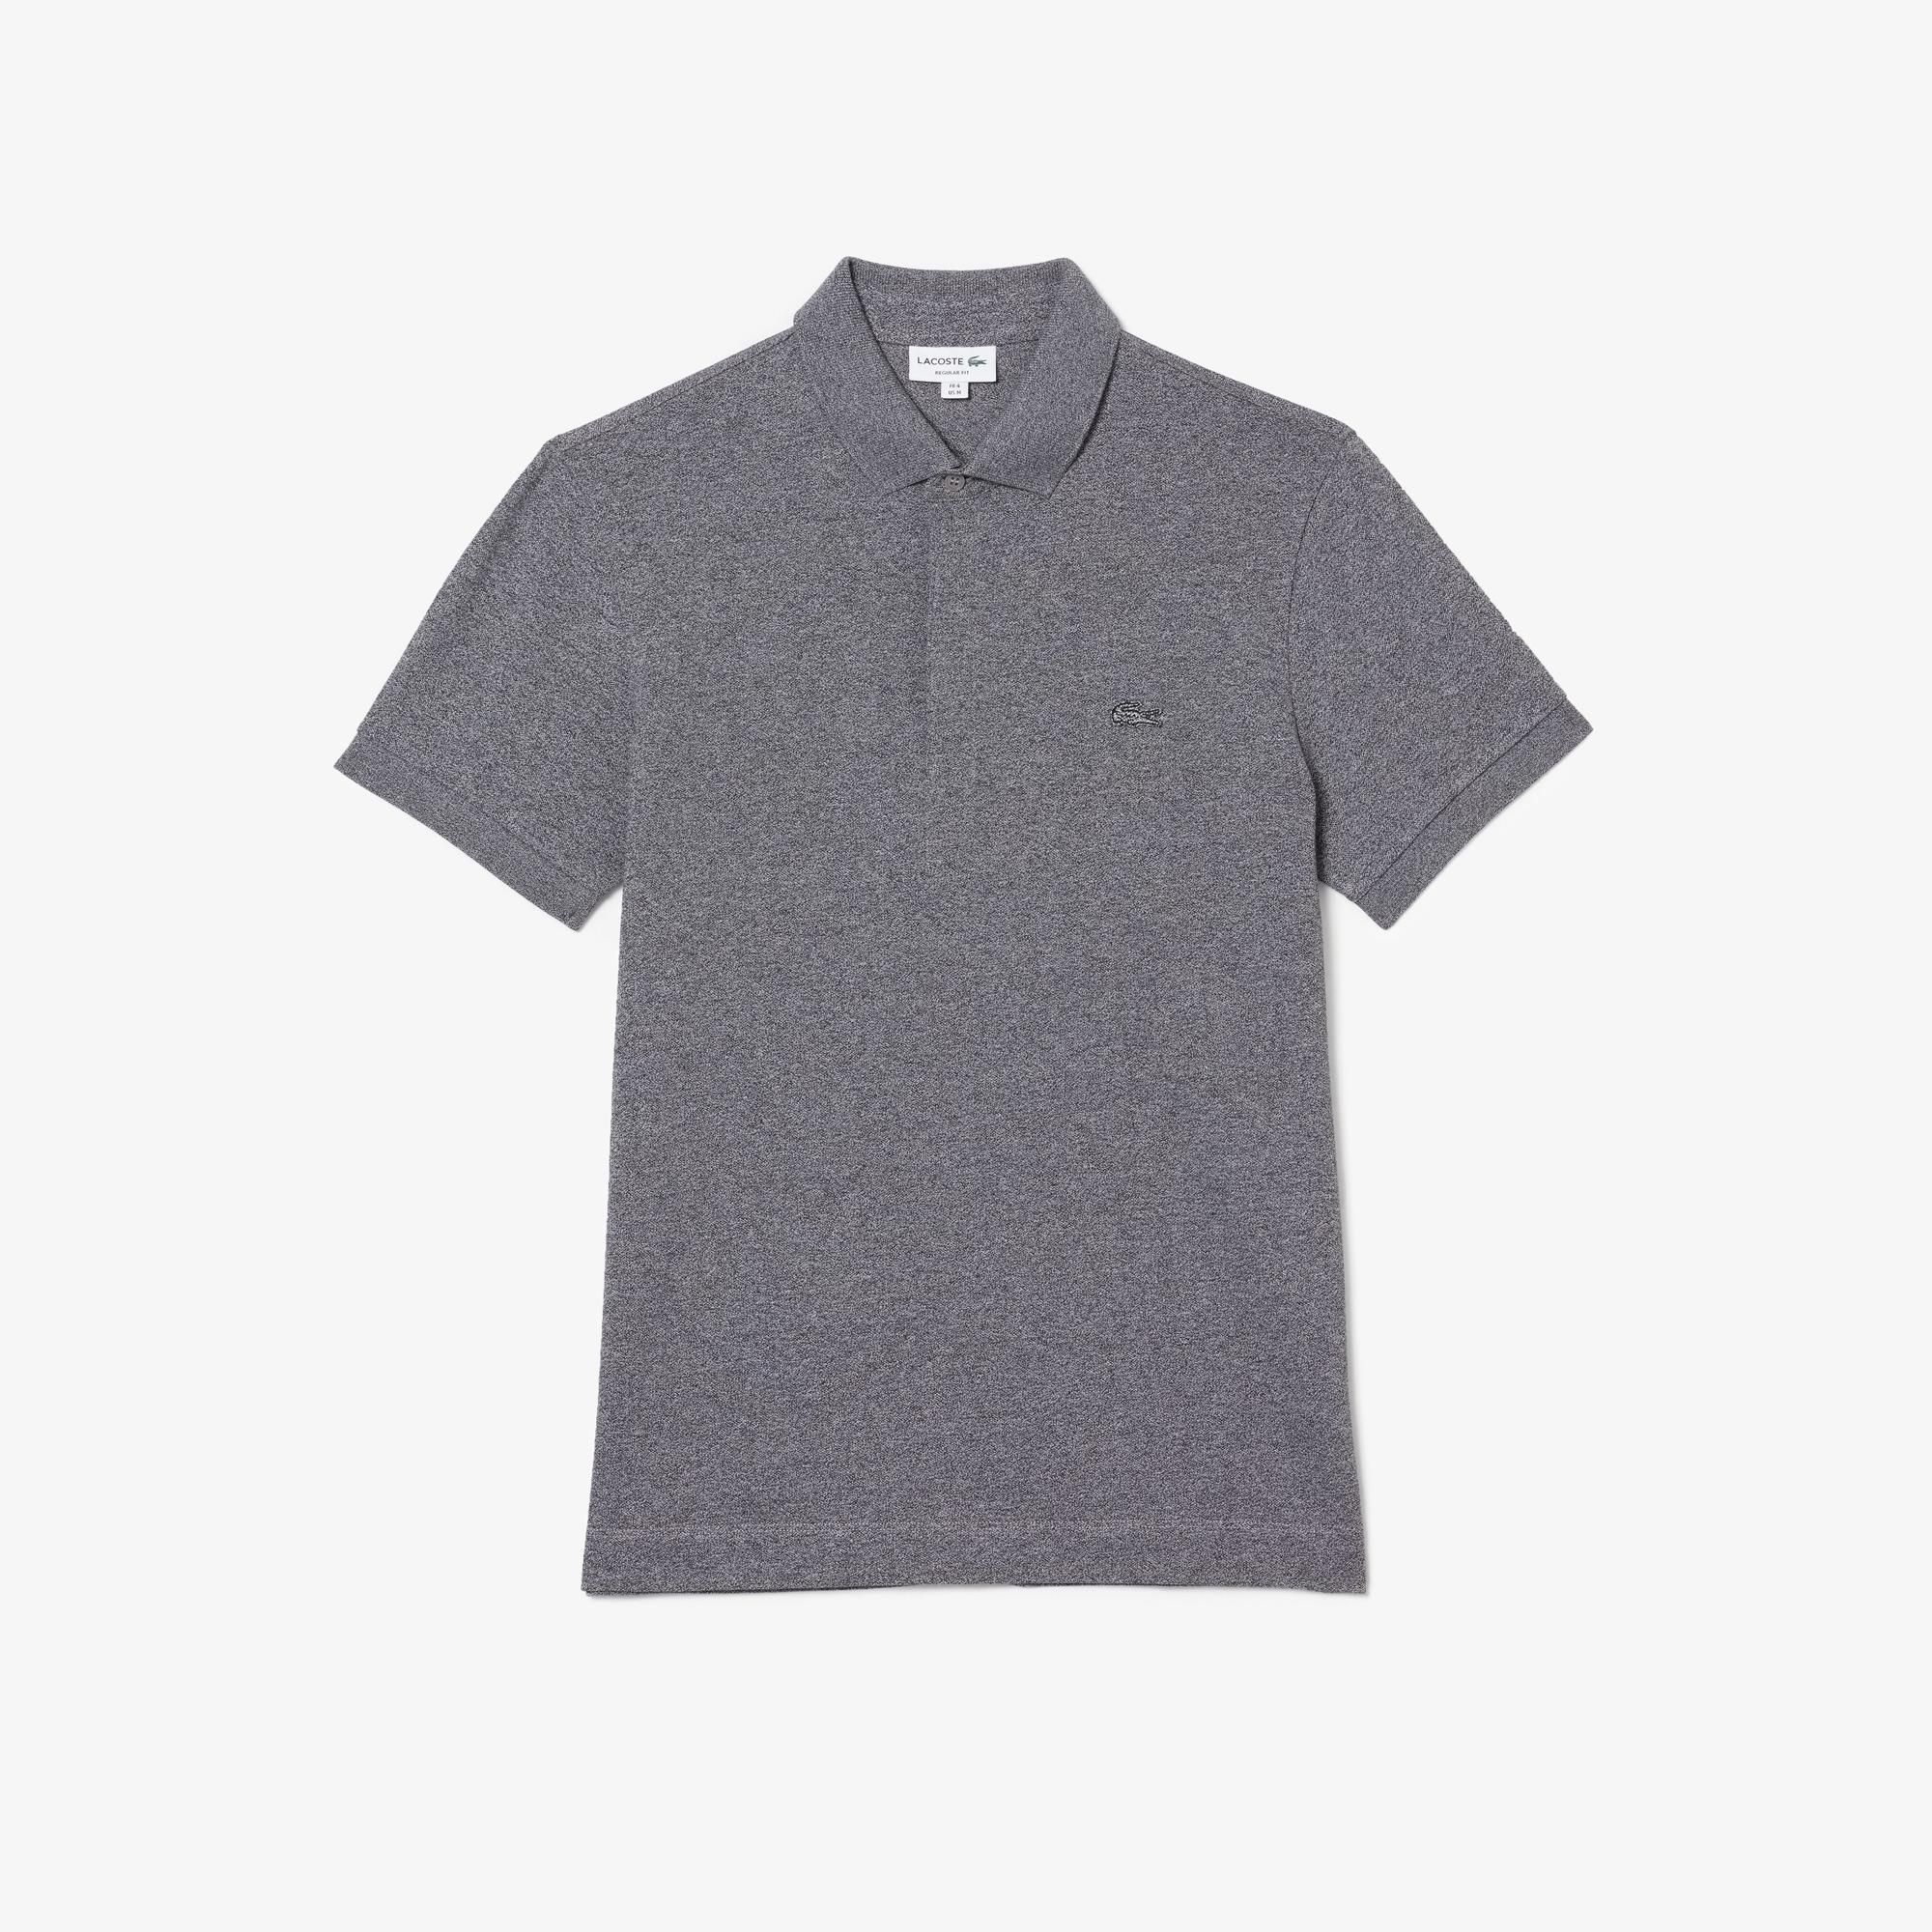  Lacoste Paris Polo Shirt Regular Fit Stretch Cotton Piqué - Grey 